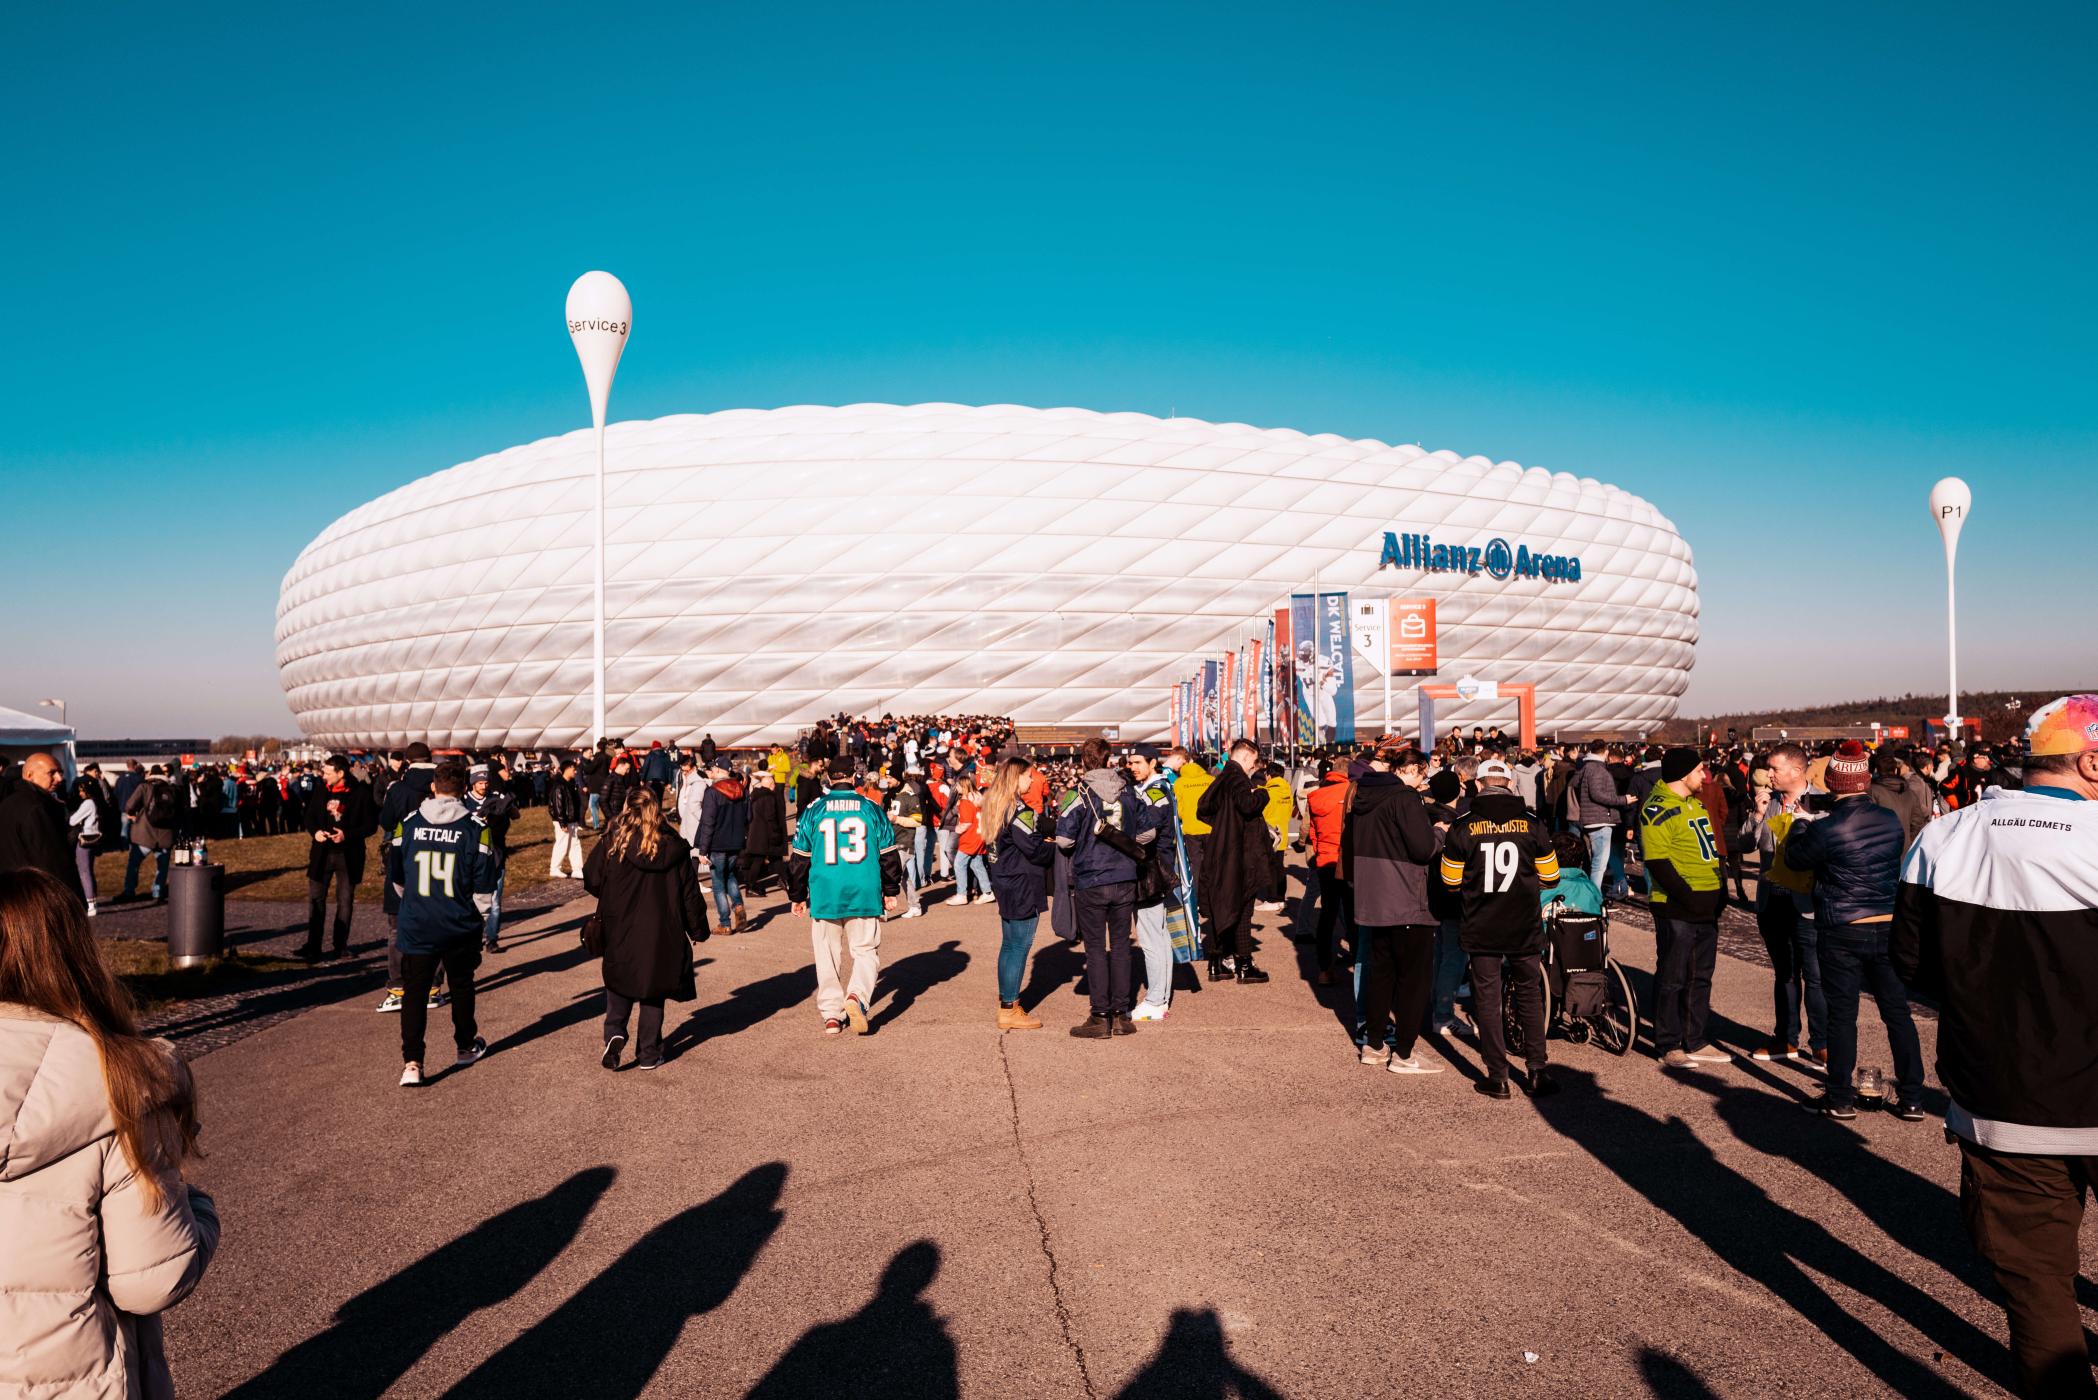 NFL-Fans vor dem NFL-Spiel in München